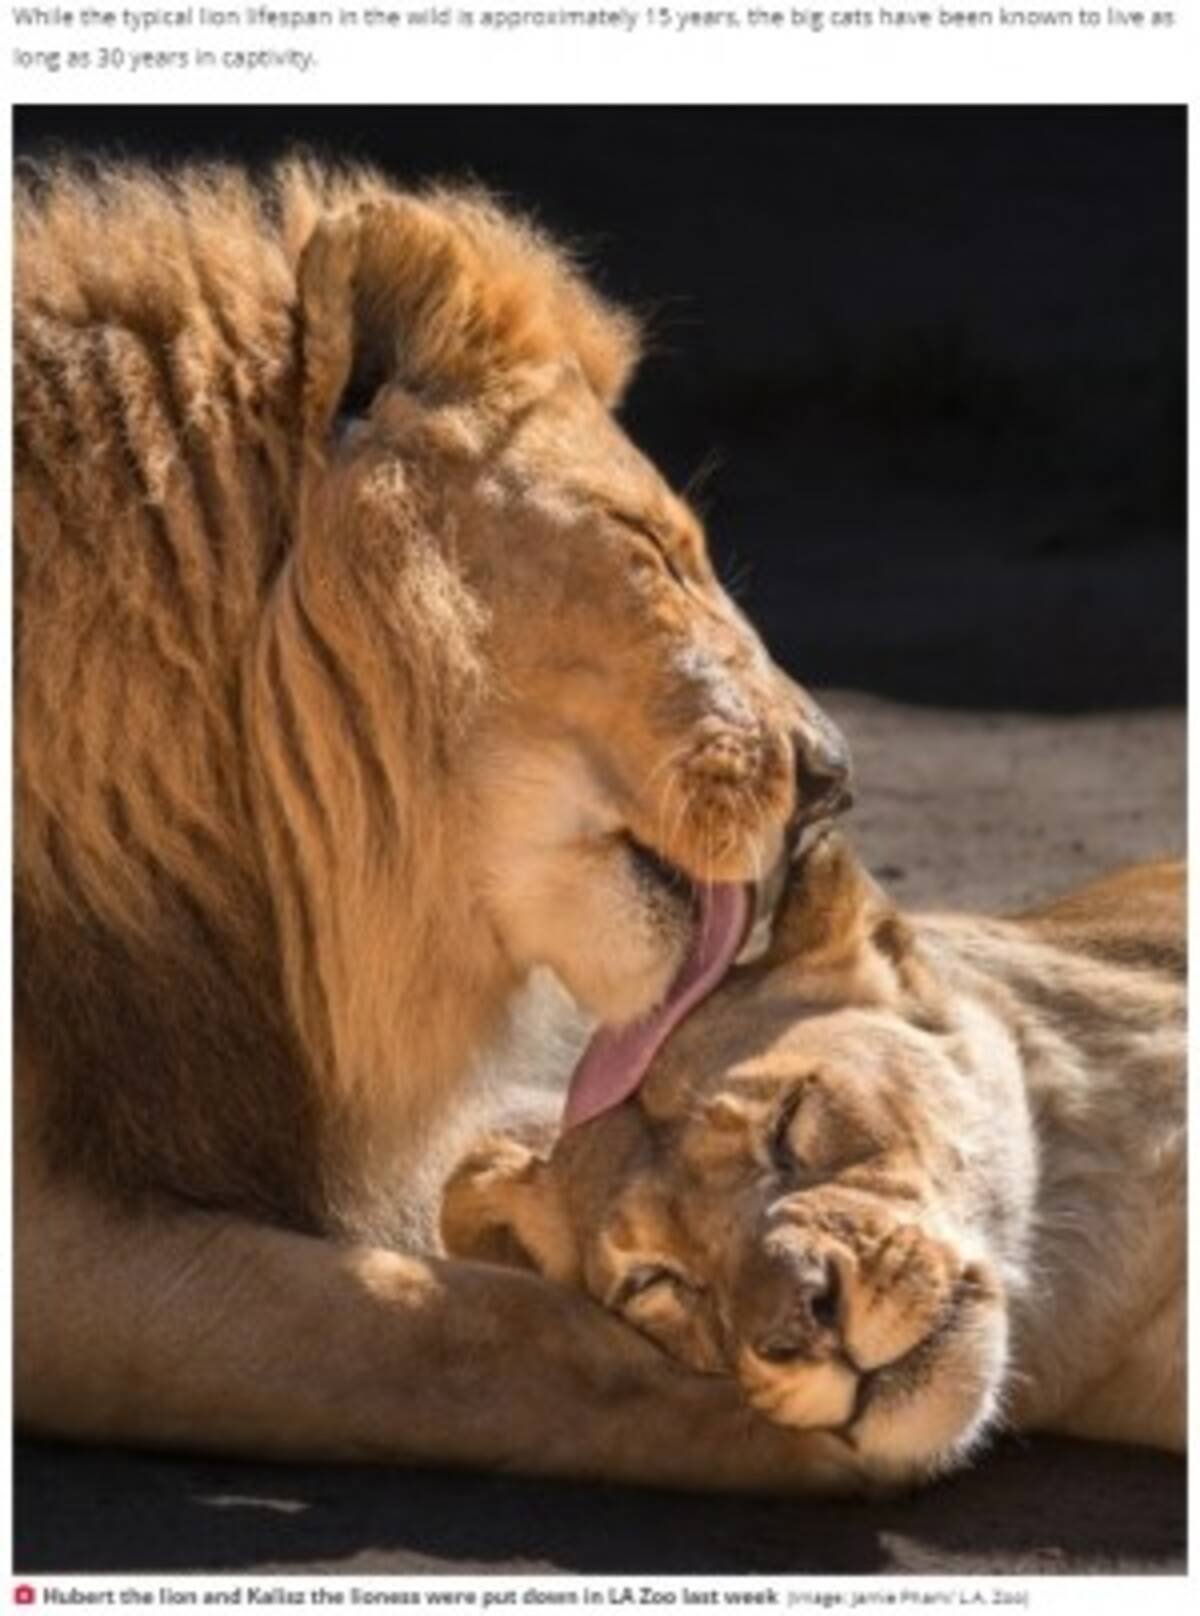 強い絆で結ばれた高齢ライオン夫婦が同時に安楽死 動物園 苦渋の決断だった 米 年8月4日 エキサイトニュース